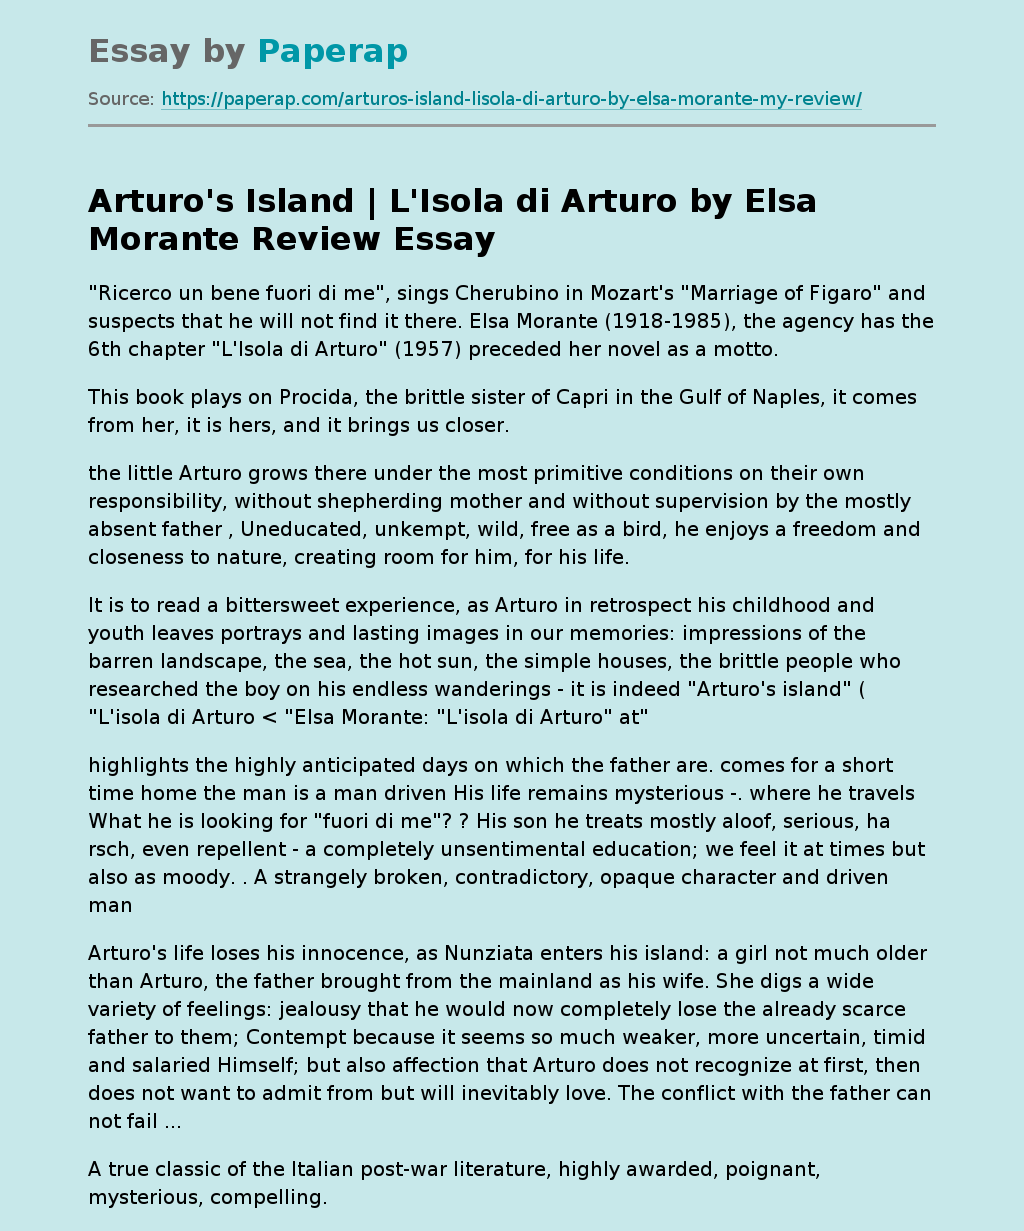 Arturo's Island | L'Isola di Arturo by Elsa Morante Review